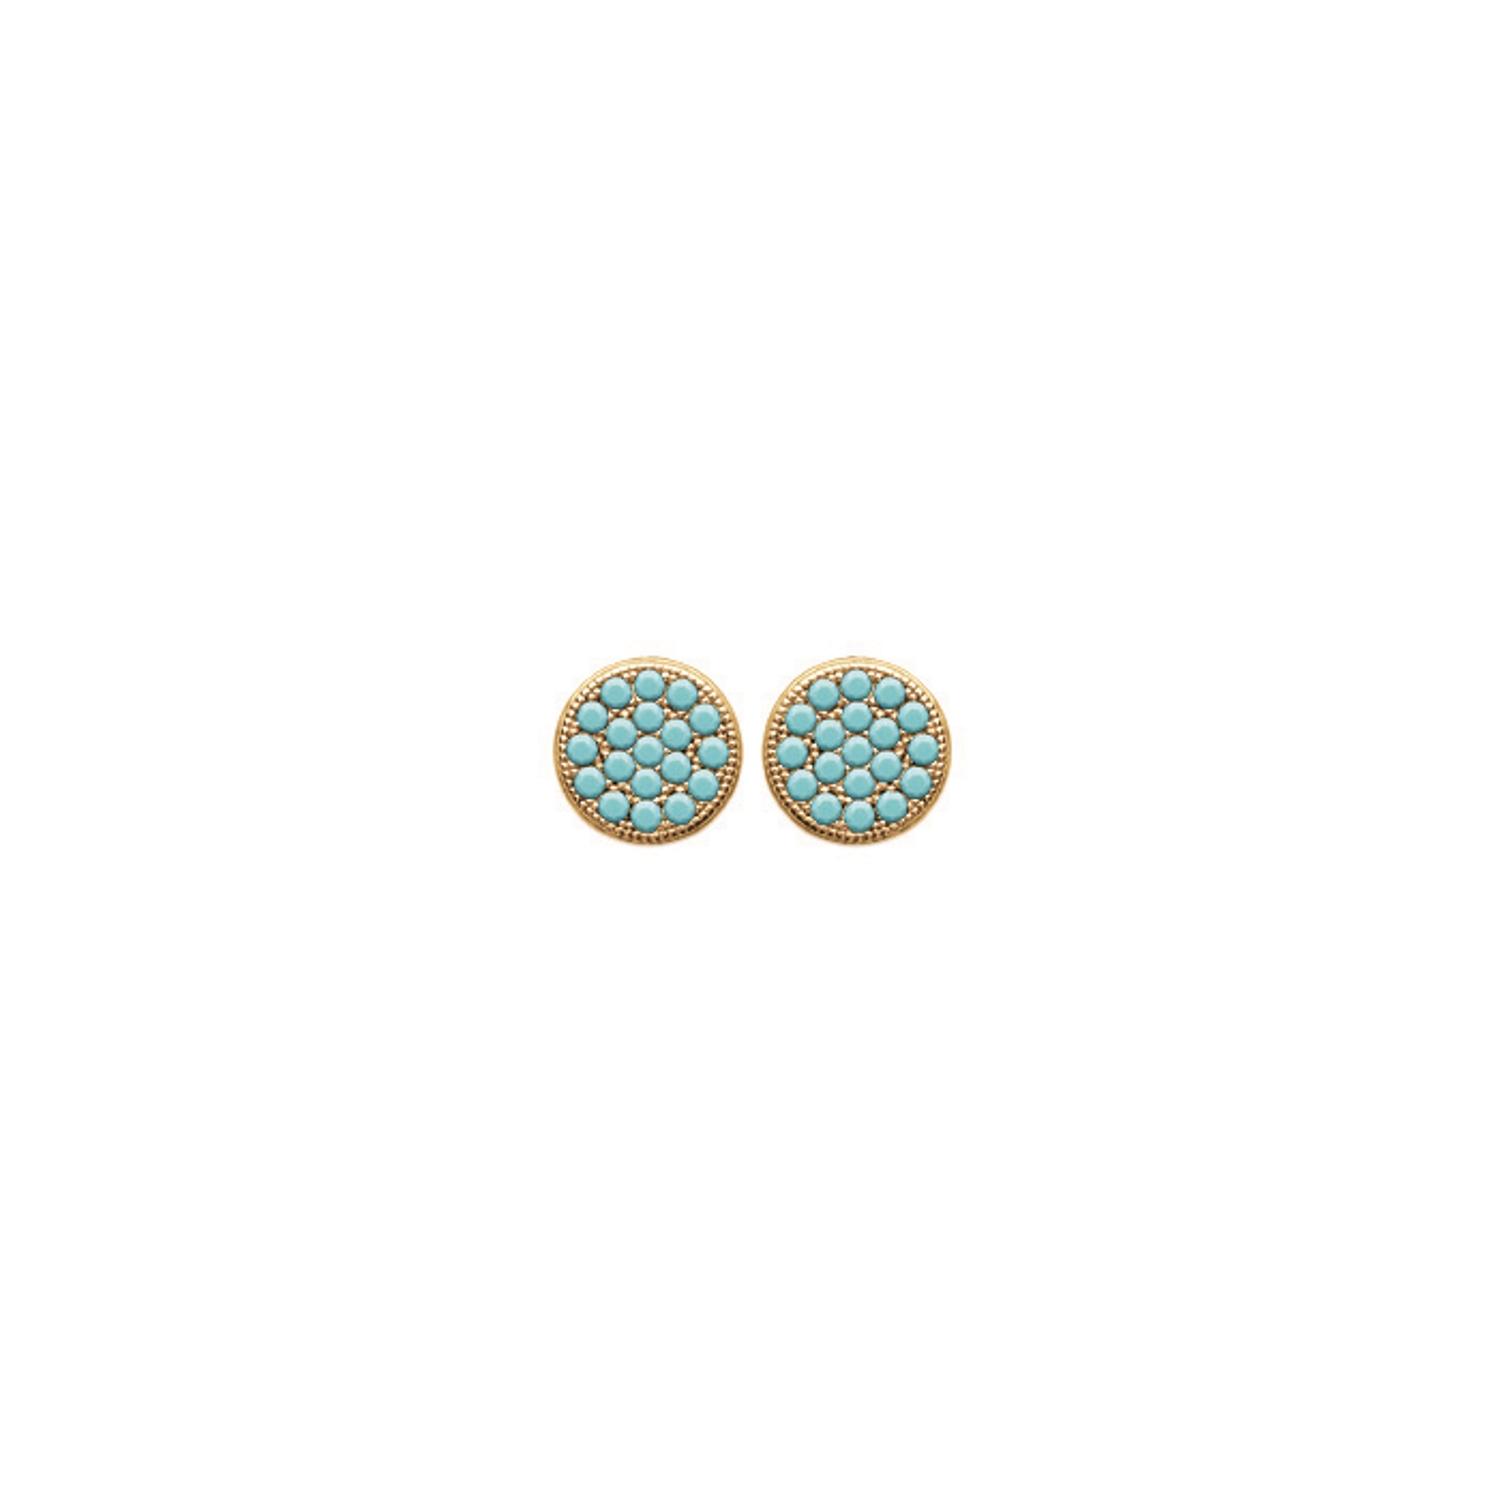 Boucles d'oreilles en plaqué or et pierre d'imitation turquoise. Rond Turquoise  Adolescent Adulte Femme Fille Indémodable 